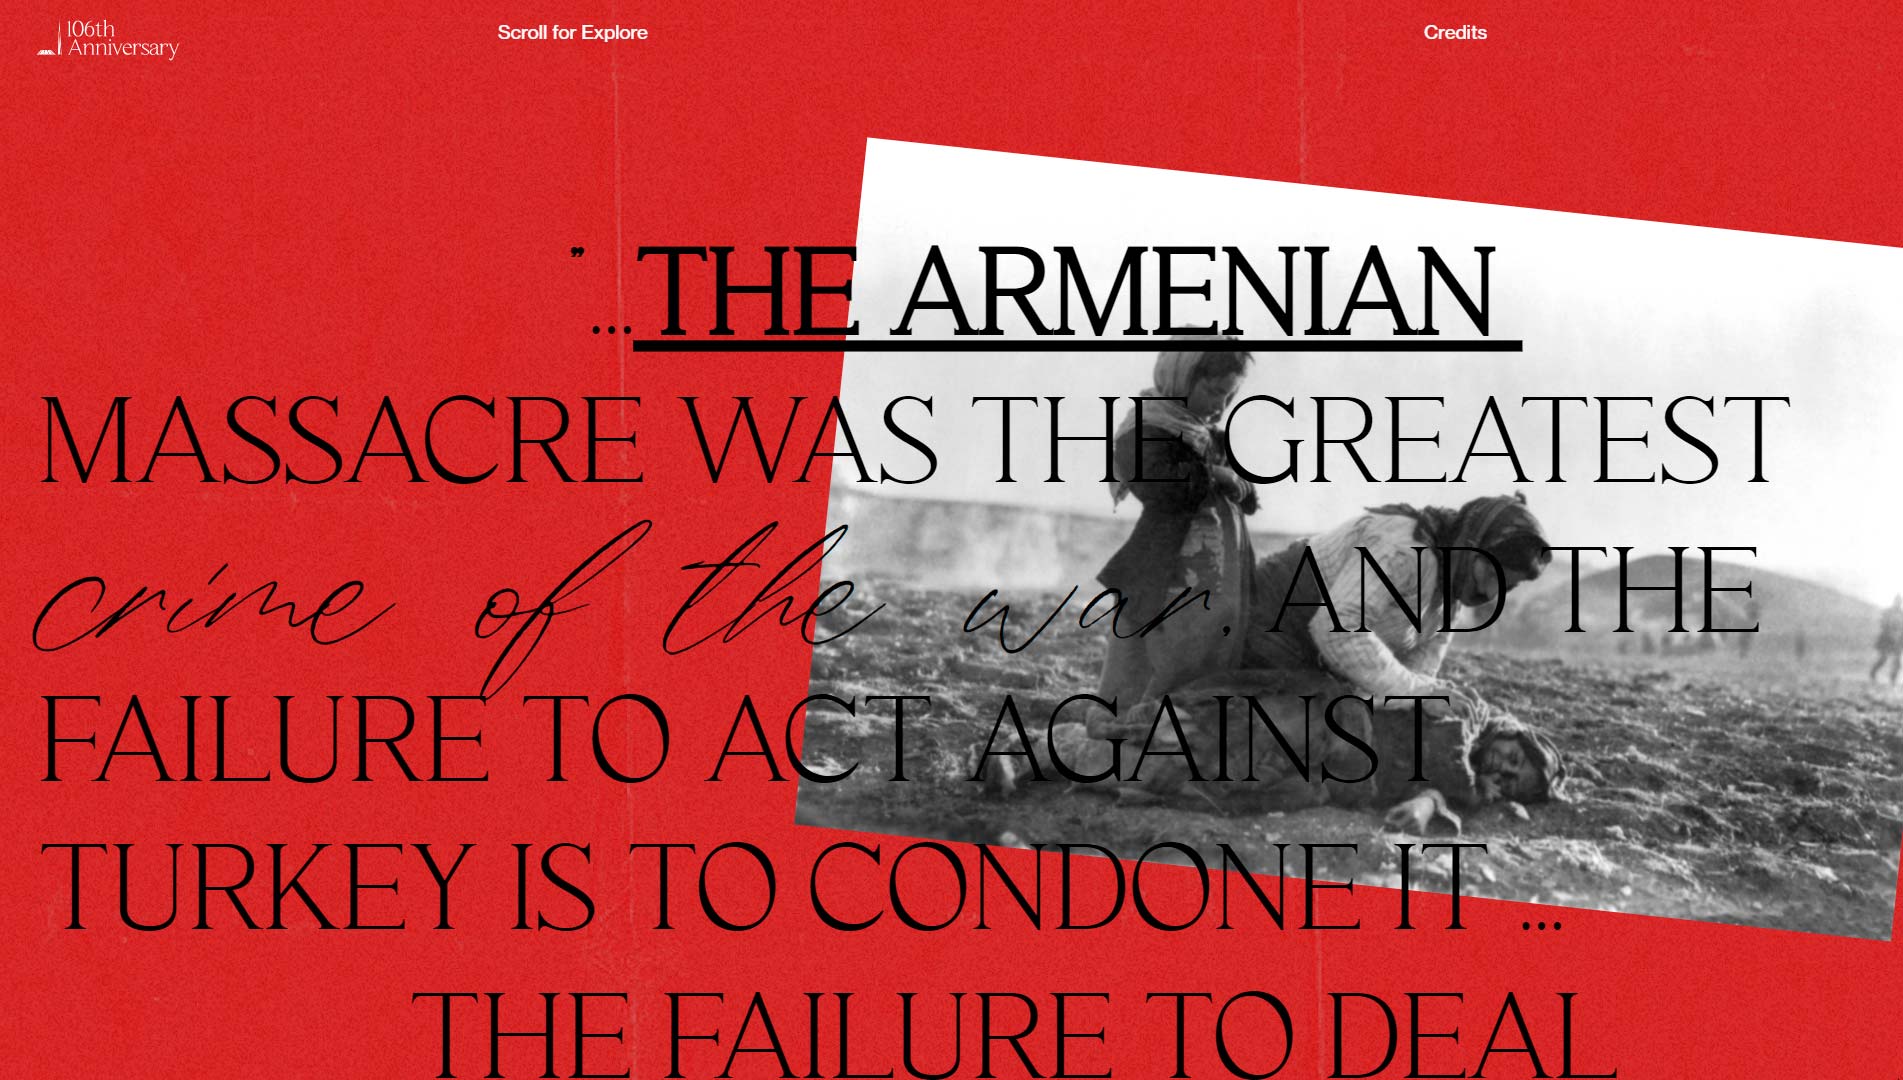 mejores-paginas-web-mes-armenian-genocide-03